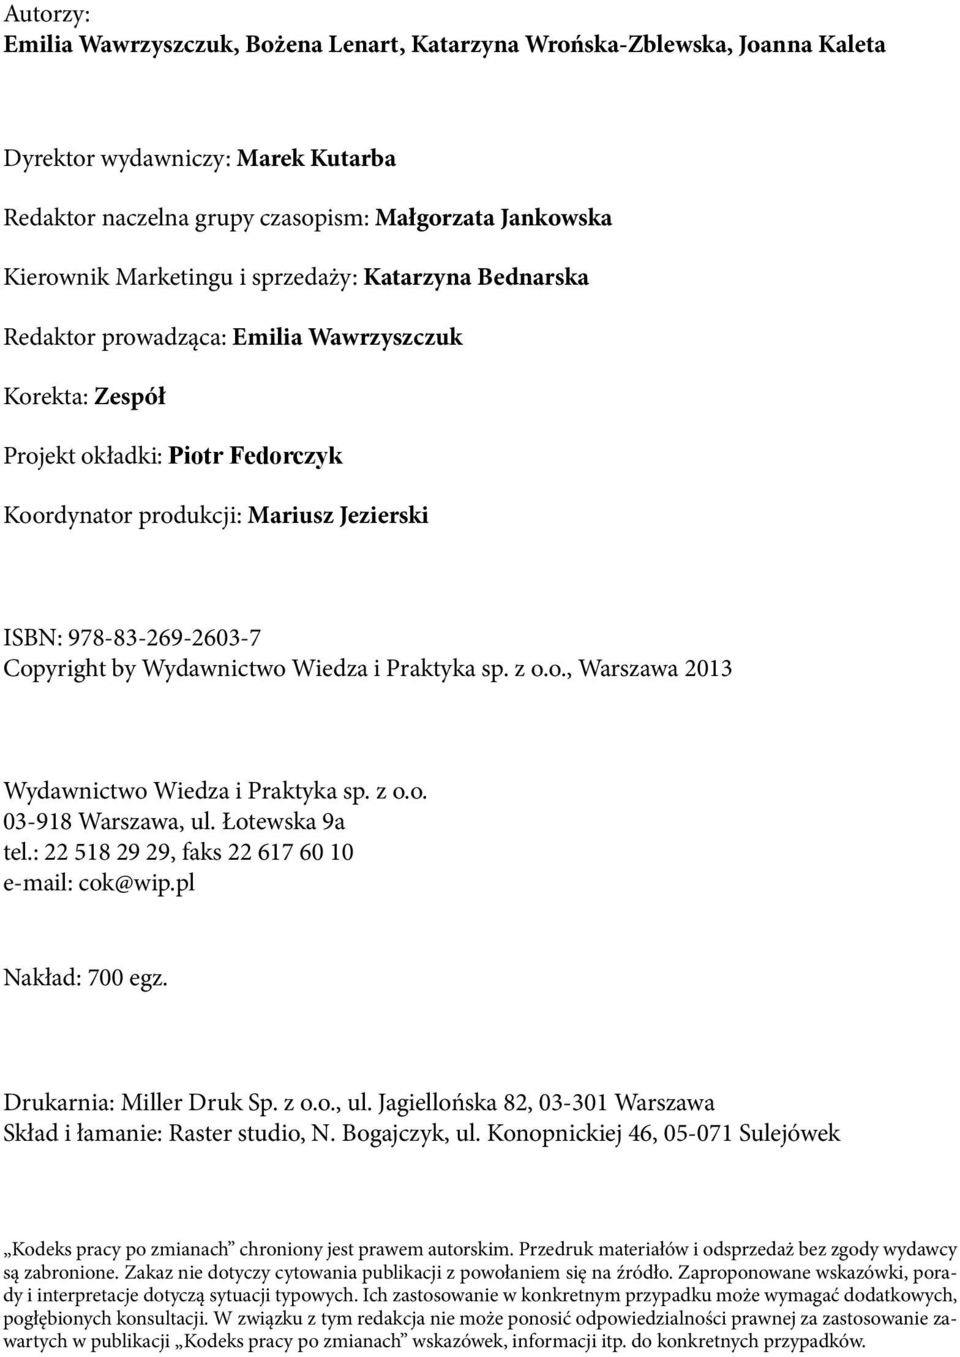 by Wydawnictwo Wiedza i Praktyka sp. z o.o., Warszawa 2013 Wydawnictwo Wiedza i Praktyka sp. z o.o. 03-918 Warszawa, ul. Łotewska 9a tel.: 22 518 29 29, faks 22 617 60 10 e-mail: cok@wip.